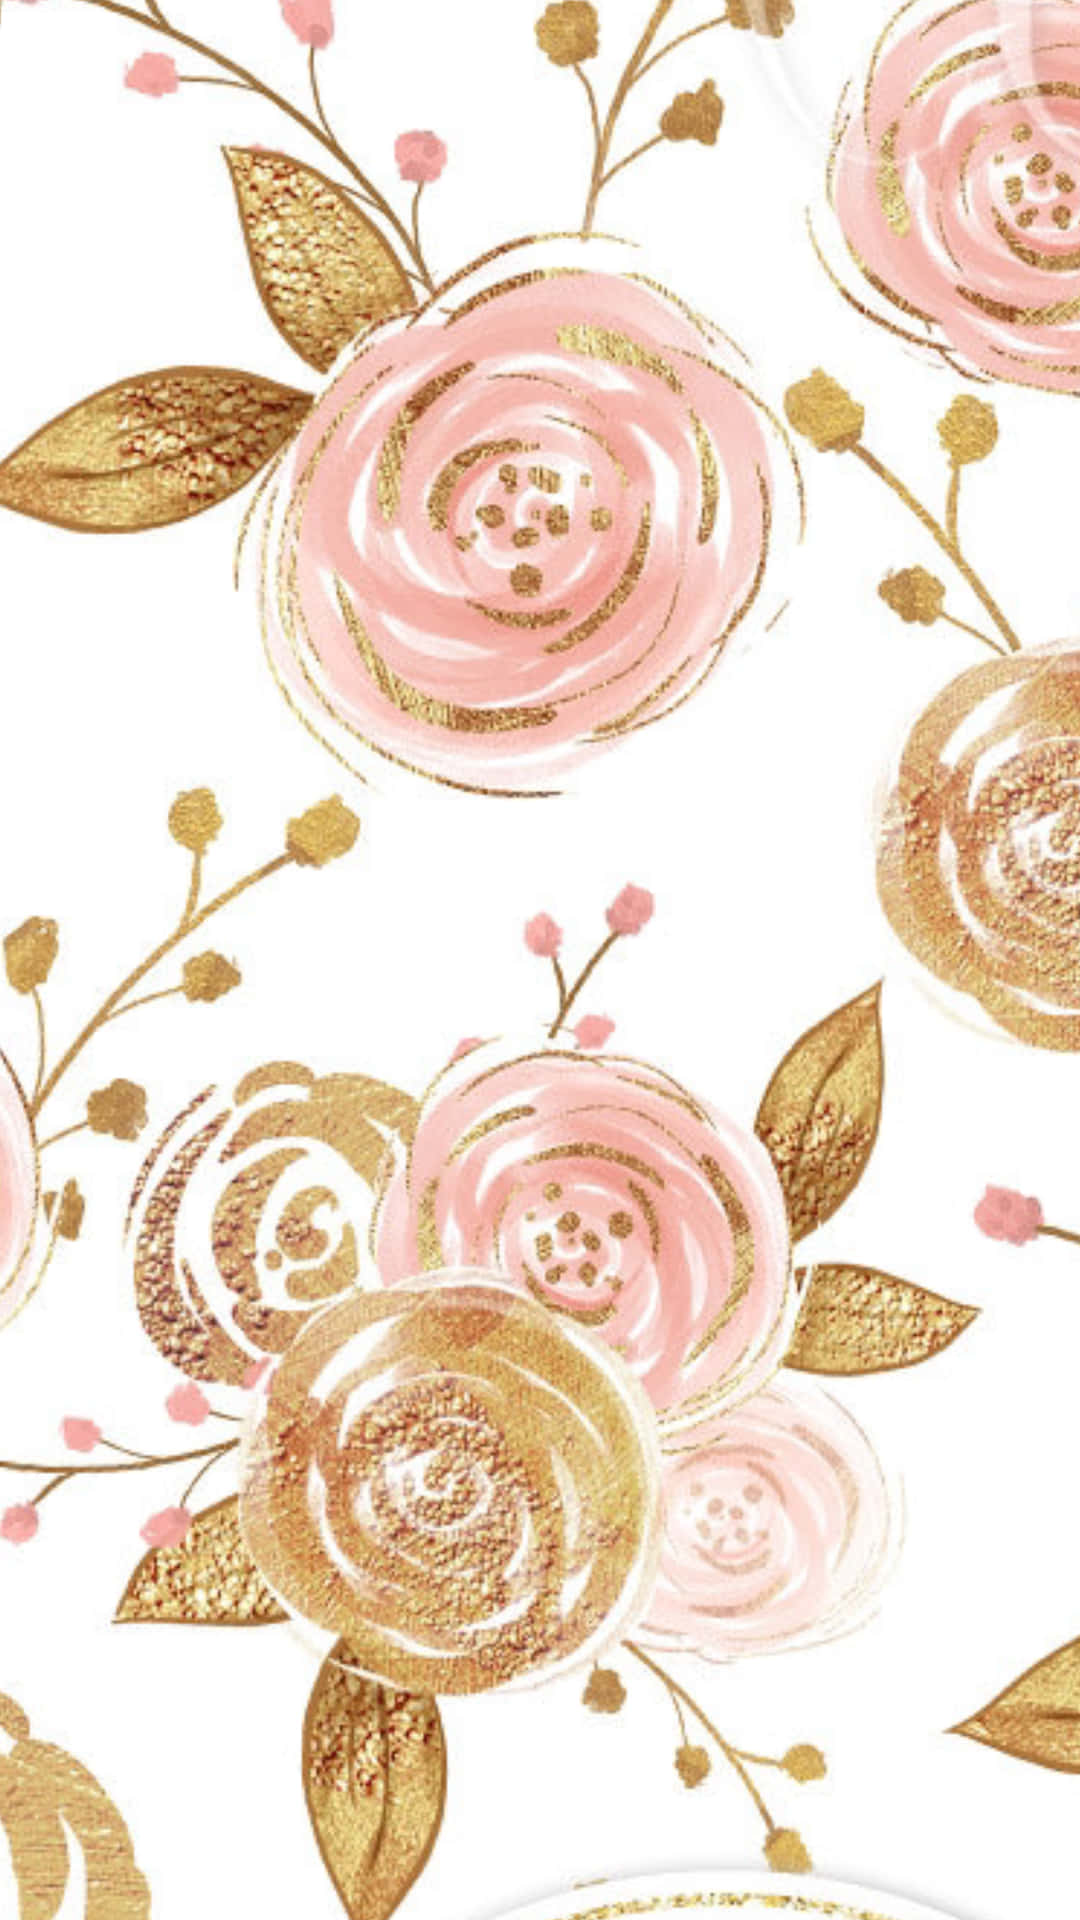 Eineperfekte Kombination Von Pink Und Gold Zusammen. Wallpaper